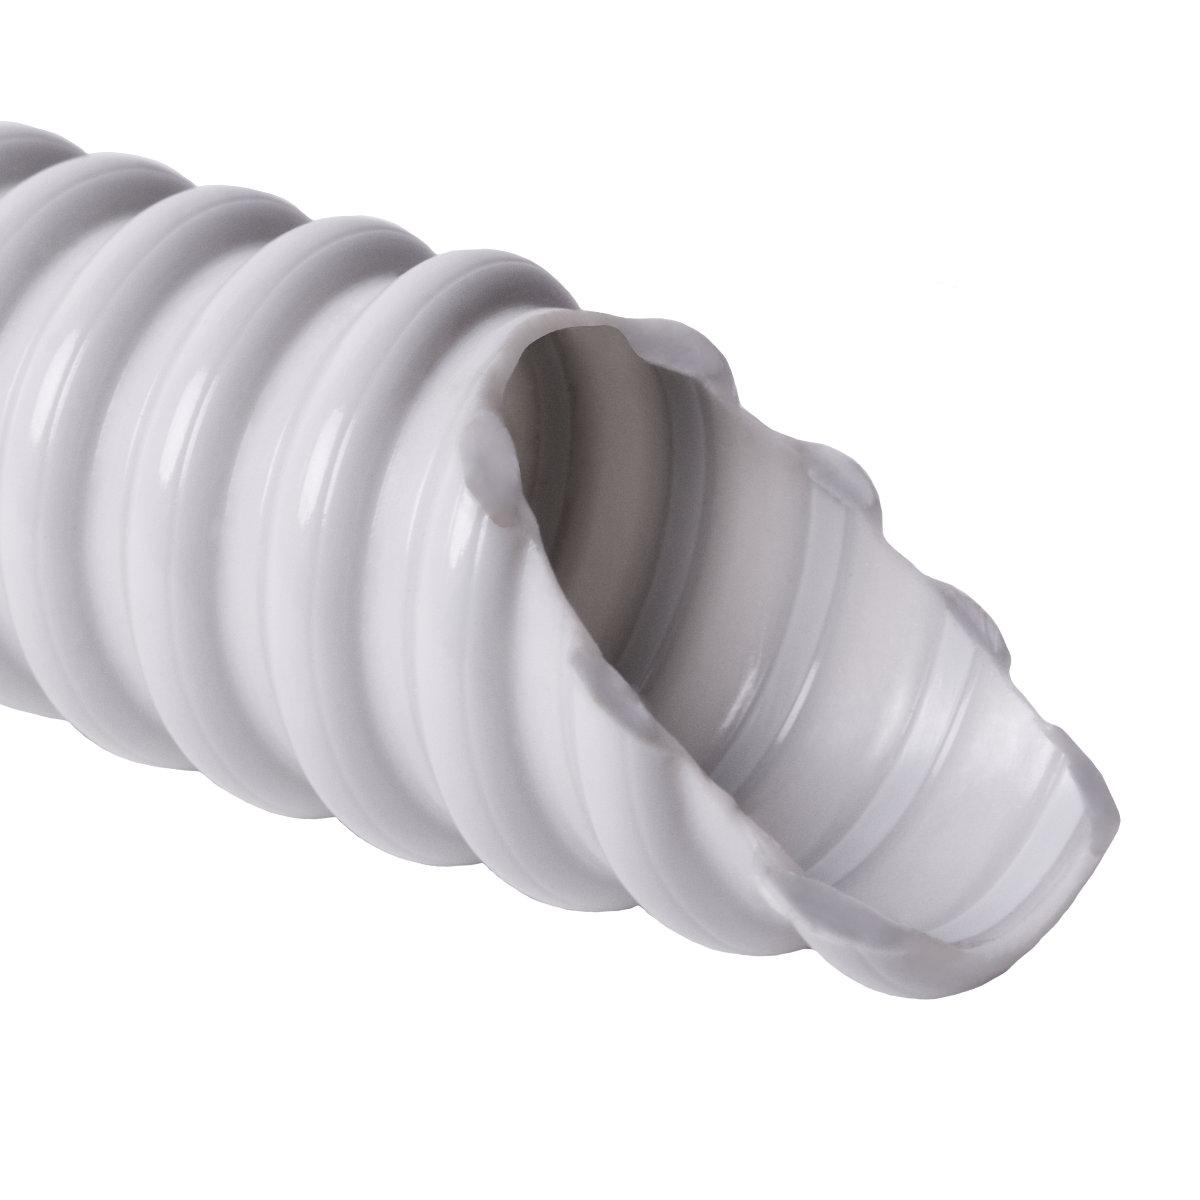 Труба гофрована електромонтажна армована спираллю SPIROFLEX самозагасаюча; 320 N/5см / 5 см; Ø32мм; твердий ПВХ; світло-сіра